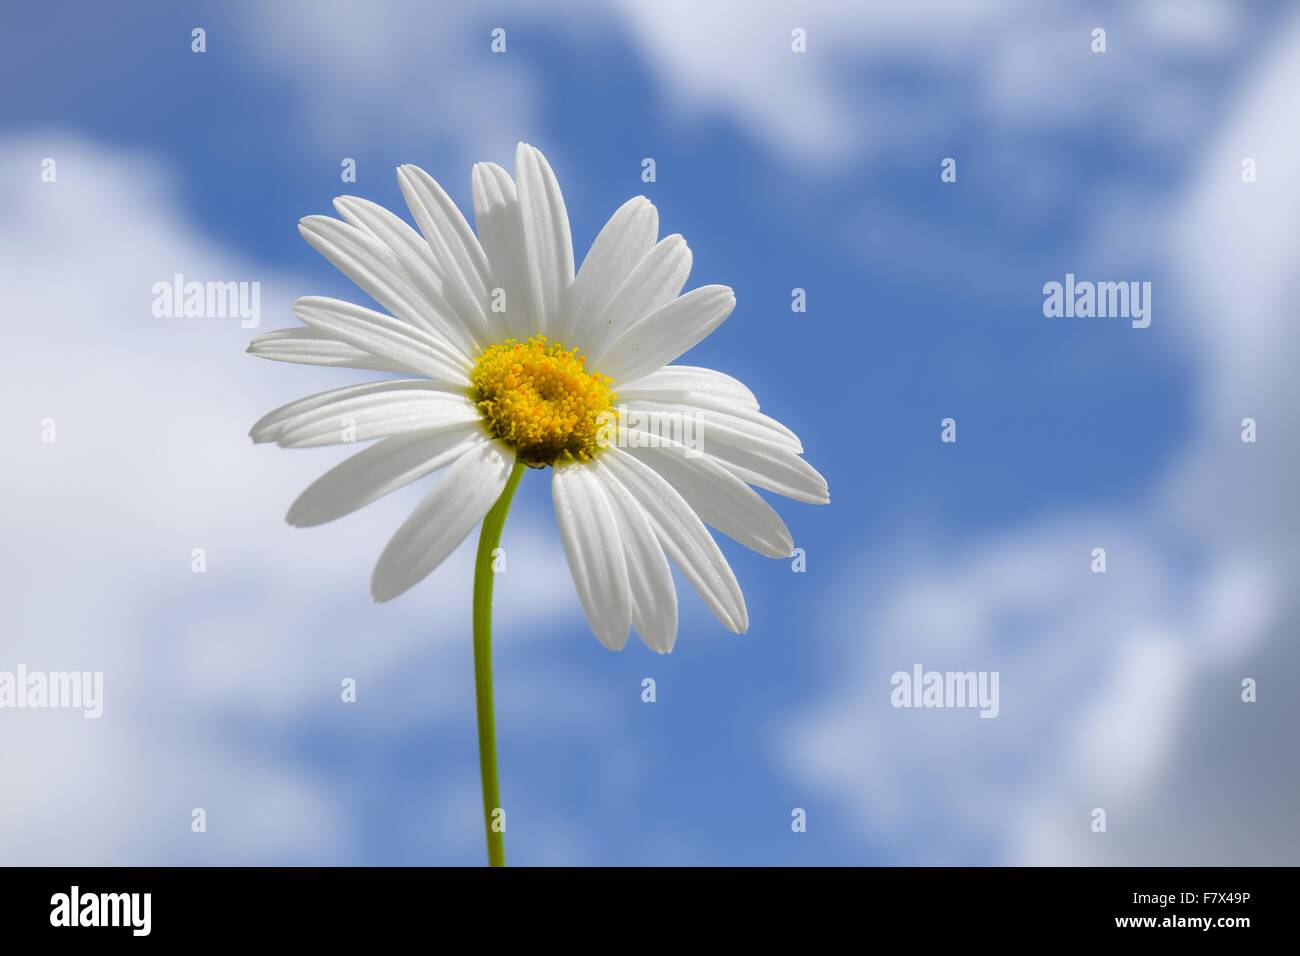 Daisy flower against partly cloudy blue sky Stock Photo